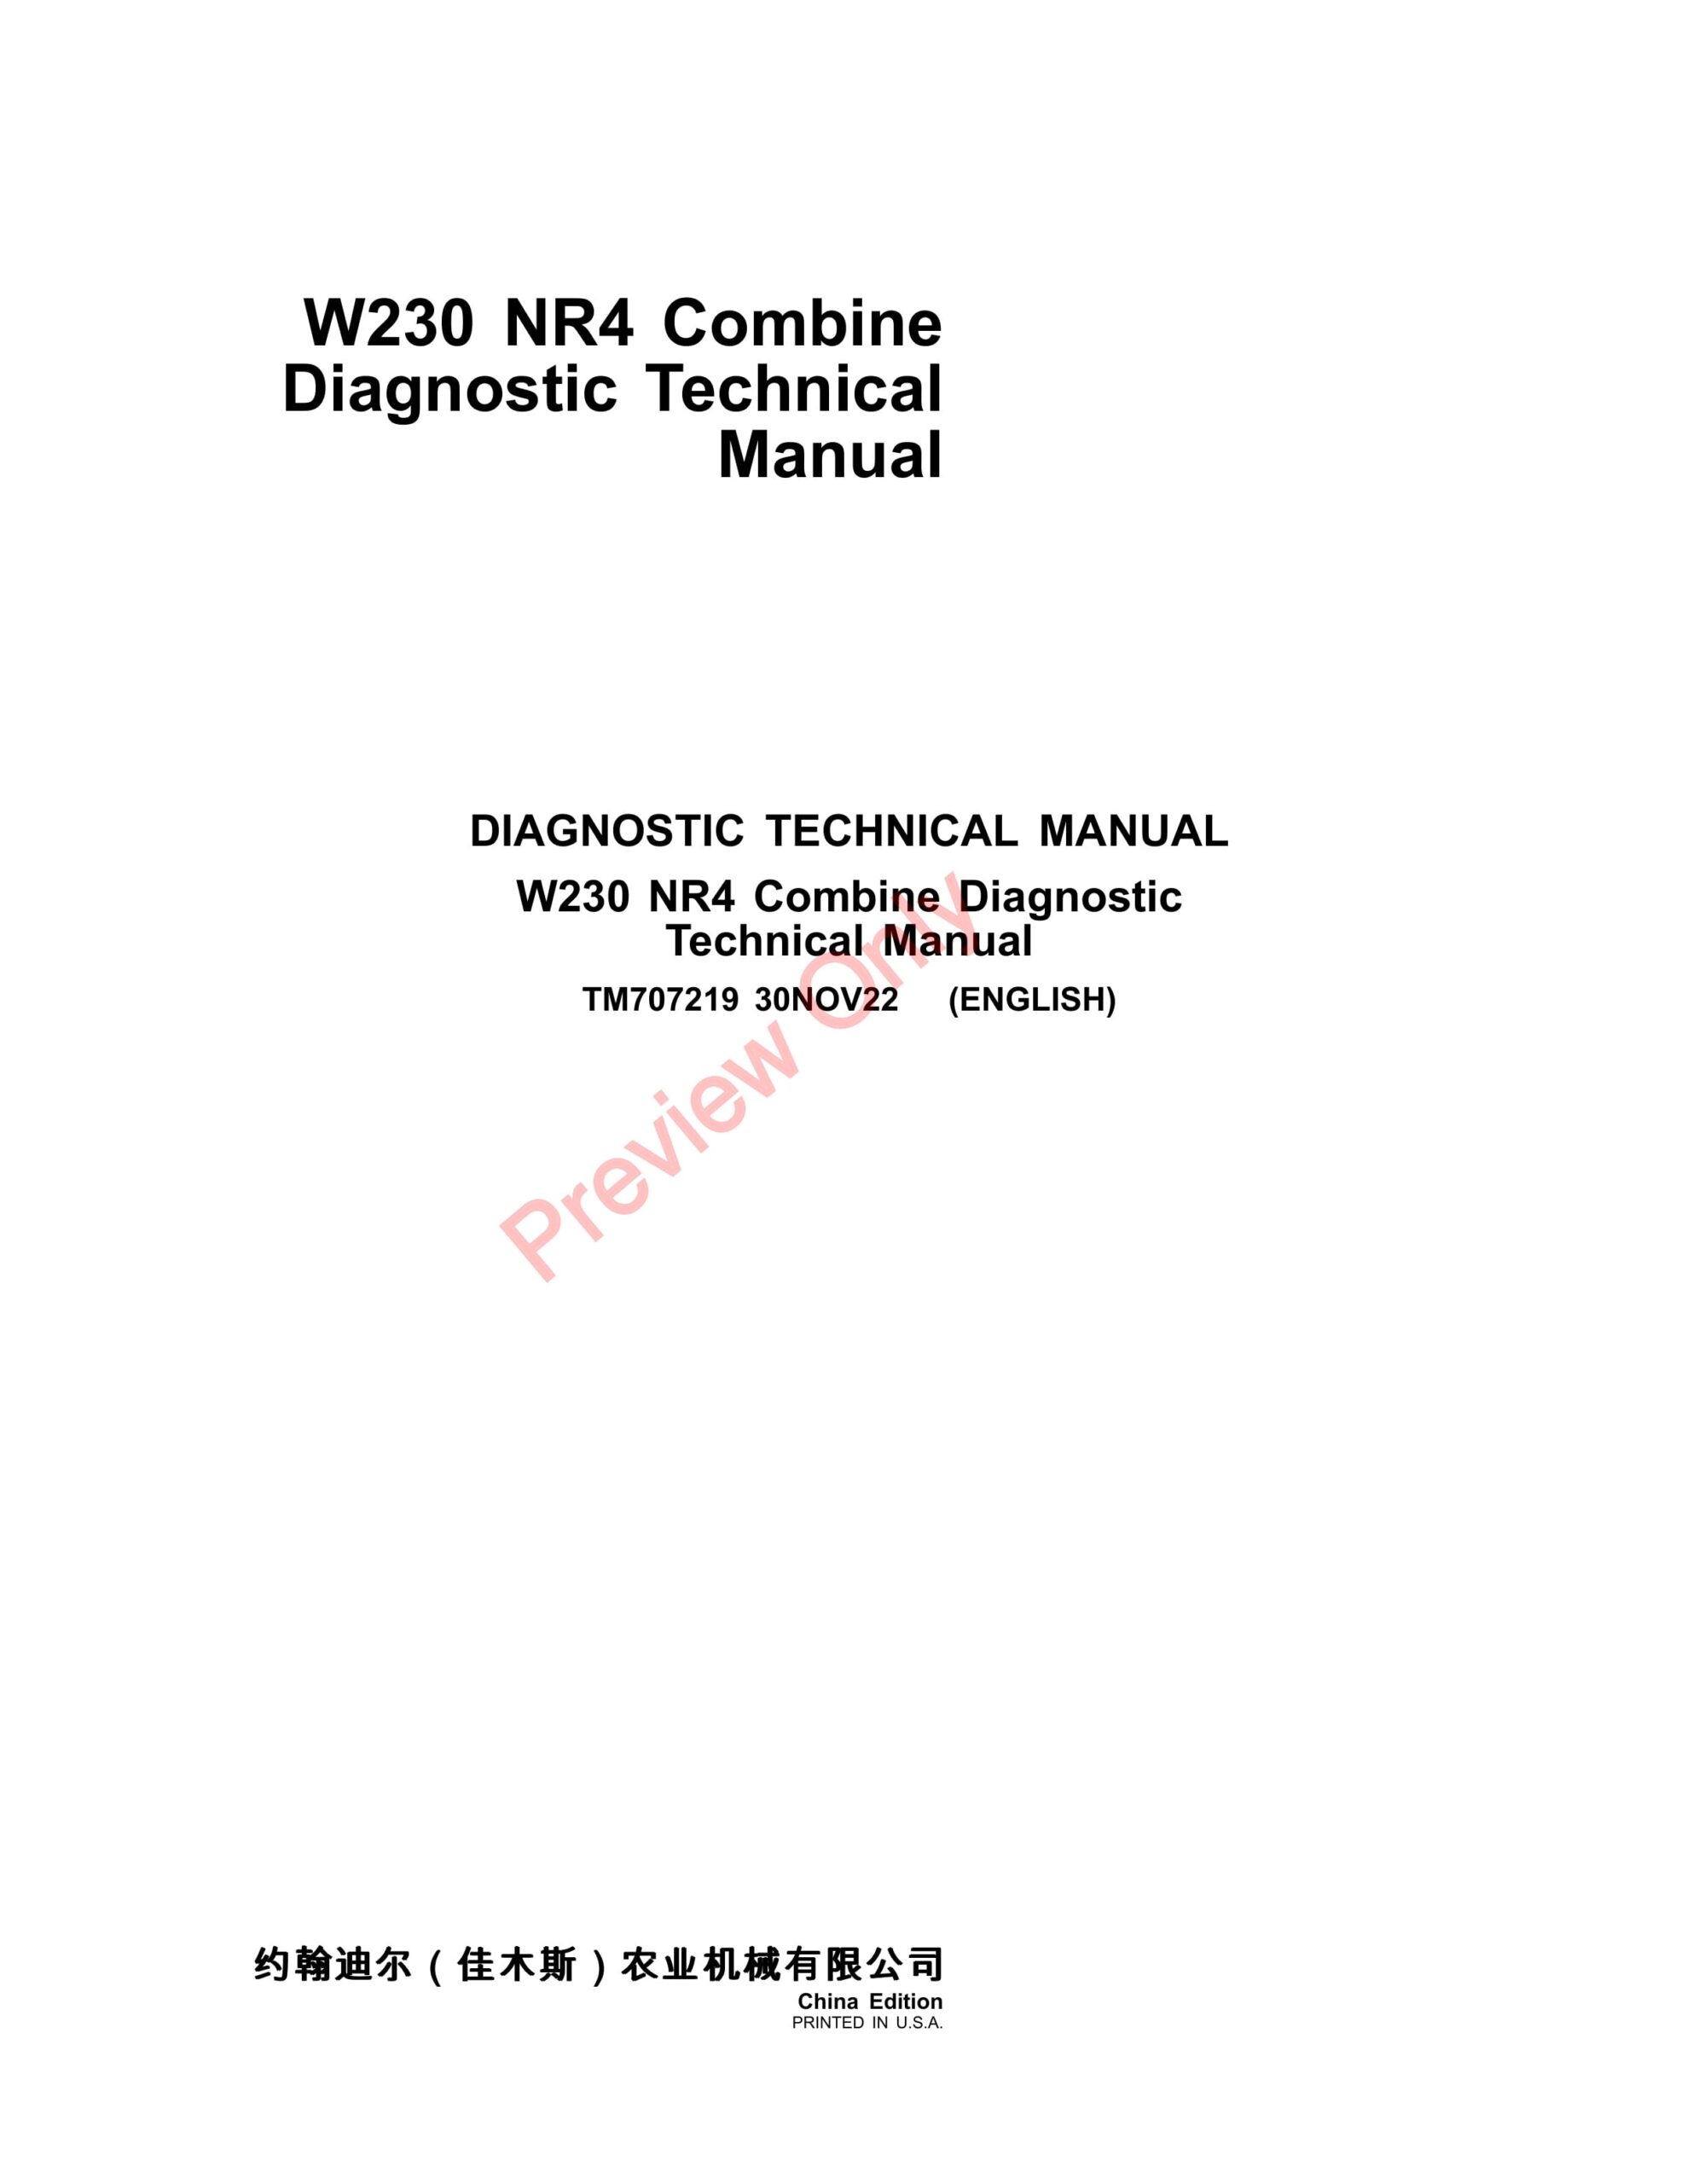 John Deere W230 Combine Diagnostic Technical Manual TM707219 30NOV22-1